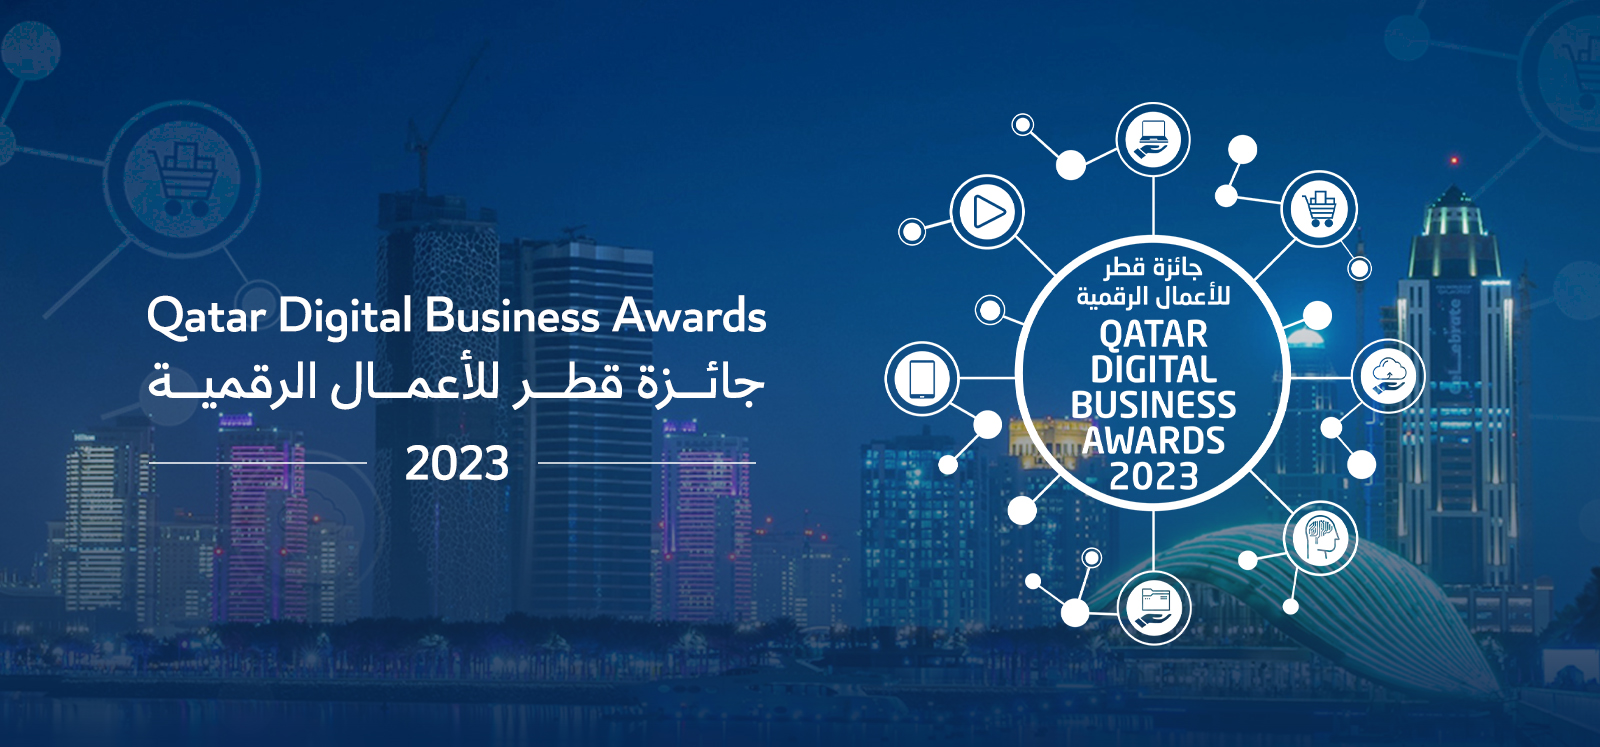 وزارة الاتصالات وتكنولوجيا المعلومات تفتح باب الترشح لجائزة قطر للأعمال الرقمية لعام 2023